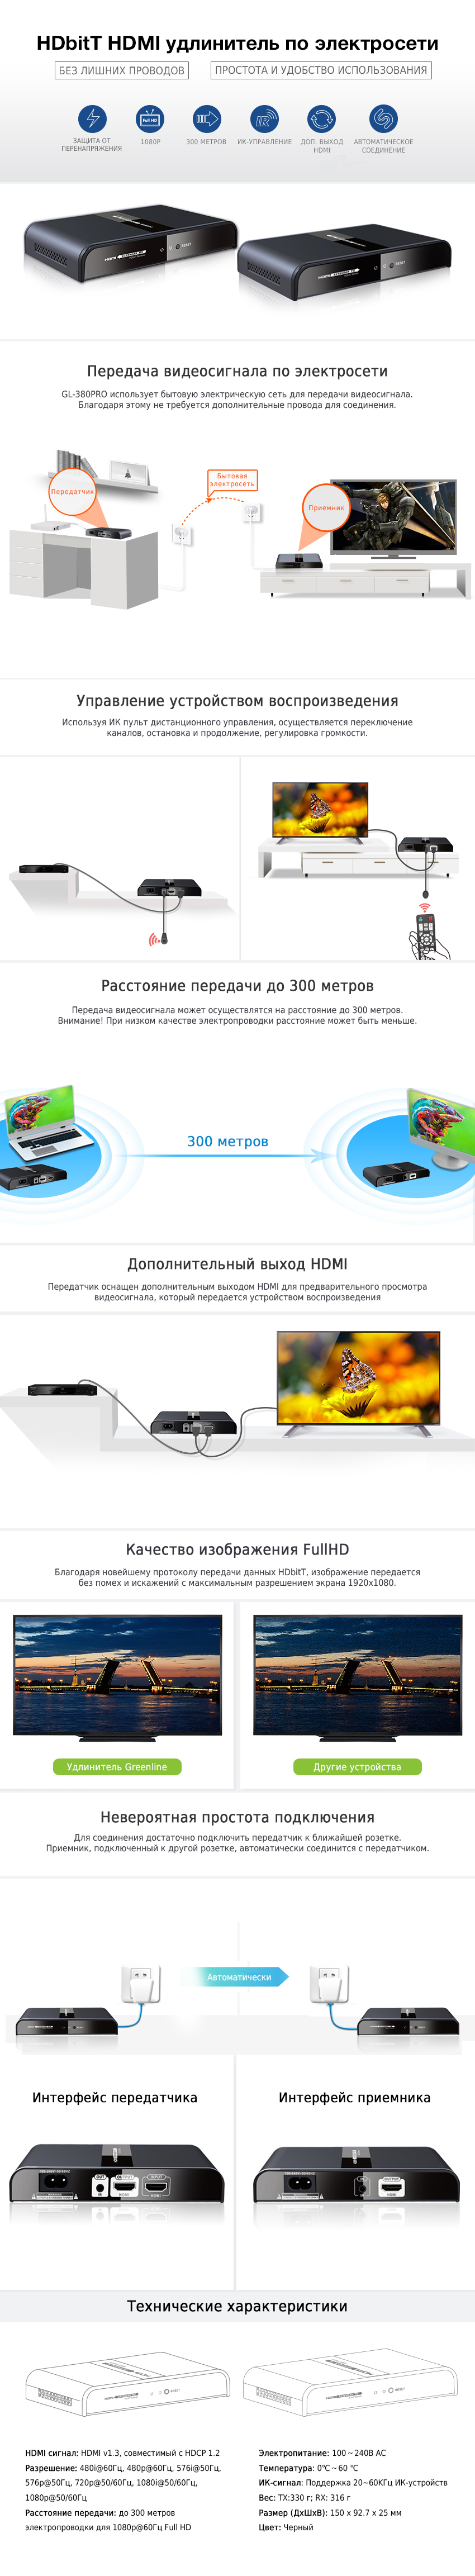 Удлинитель HDMI по электросети Greenline GL-380 до 300 метров